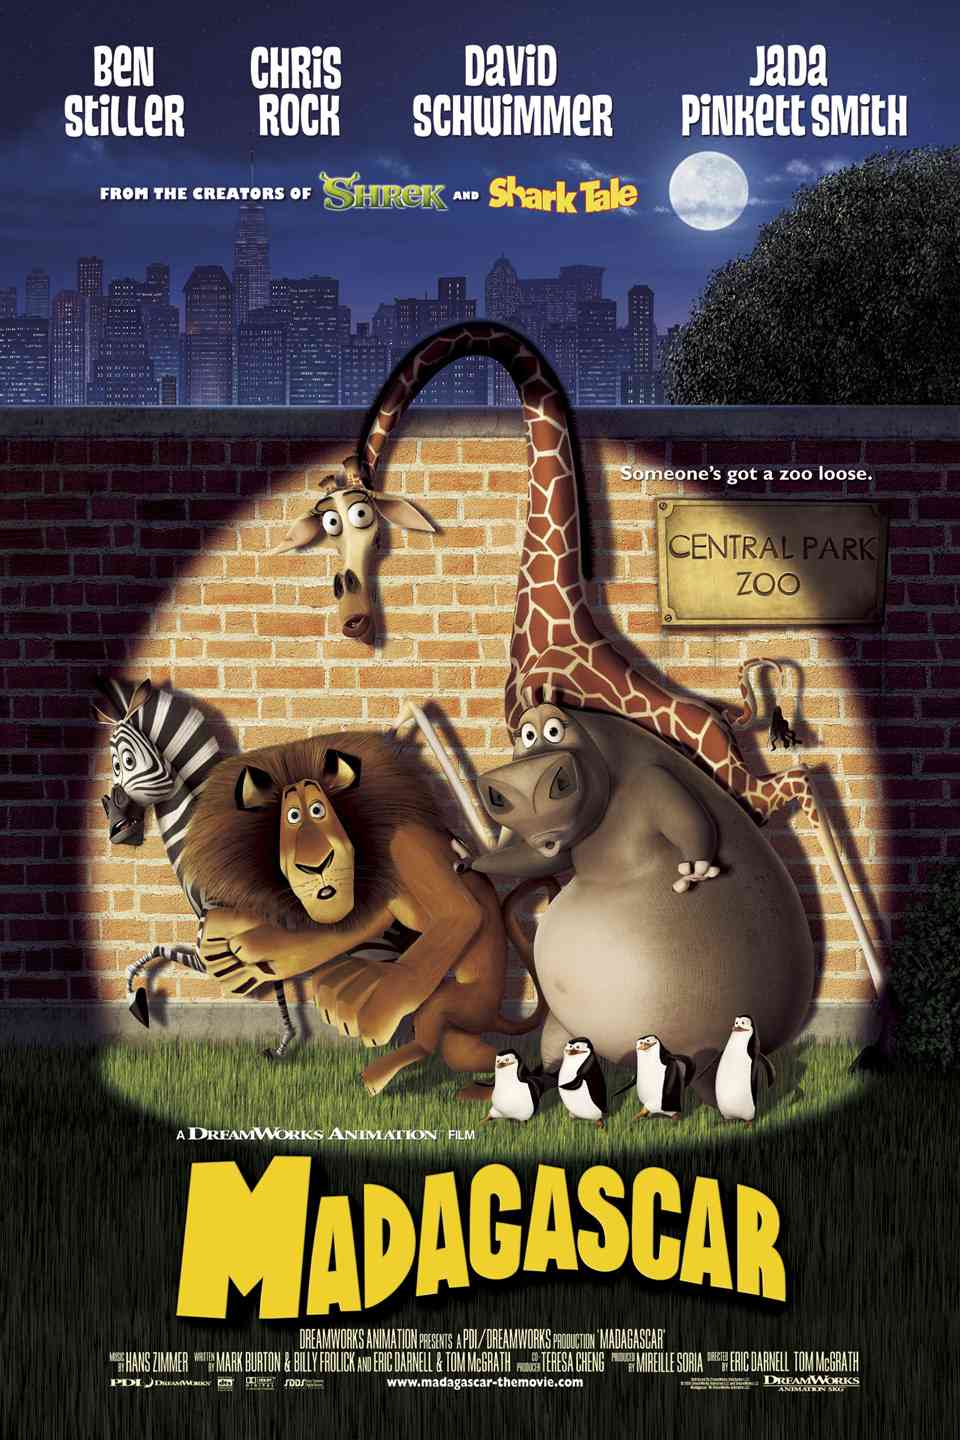 FULL MOVIE: Madagascar (2005) [Animation]